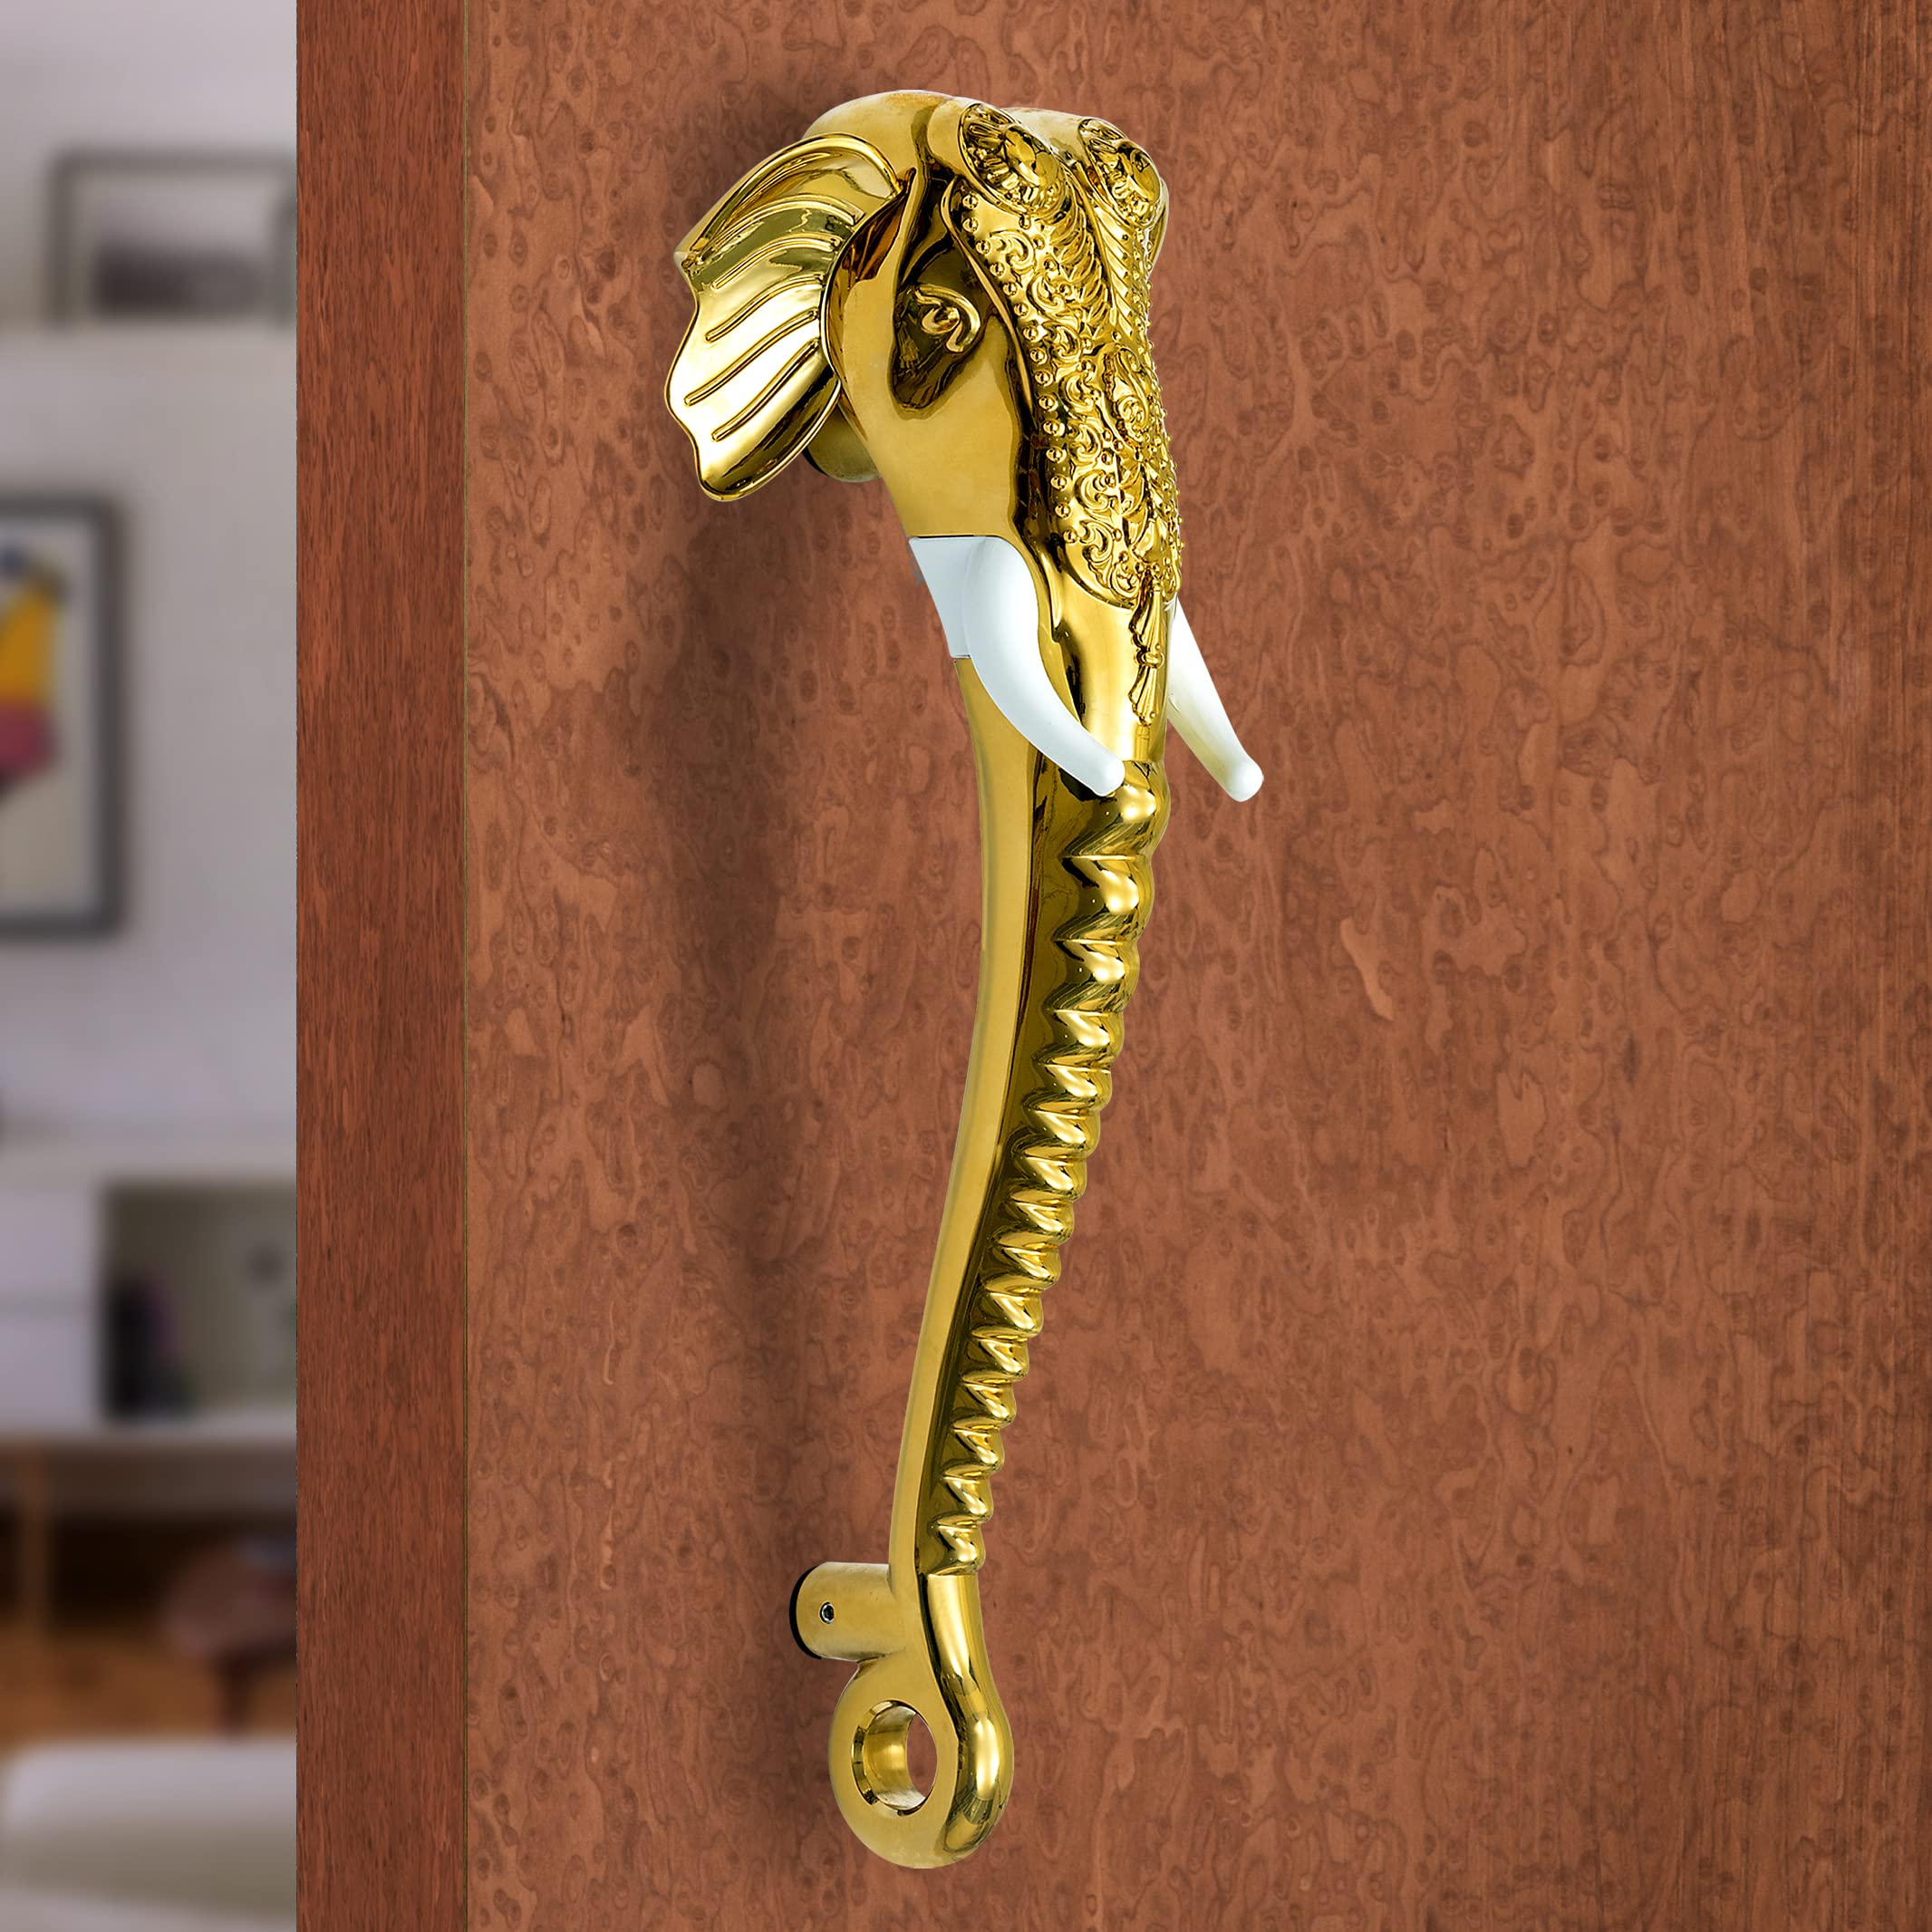 Plantex Heavy Duty Door Handle/Door & Home Decor/11-inches Elephante Shape Main Door Handle/Door Pull Push Handle - Pack of 1 (Golden Finish)